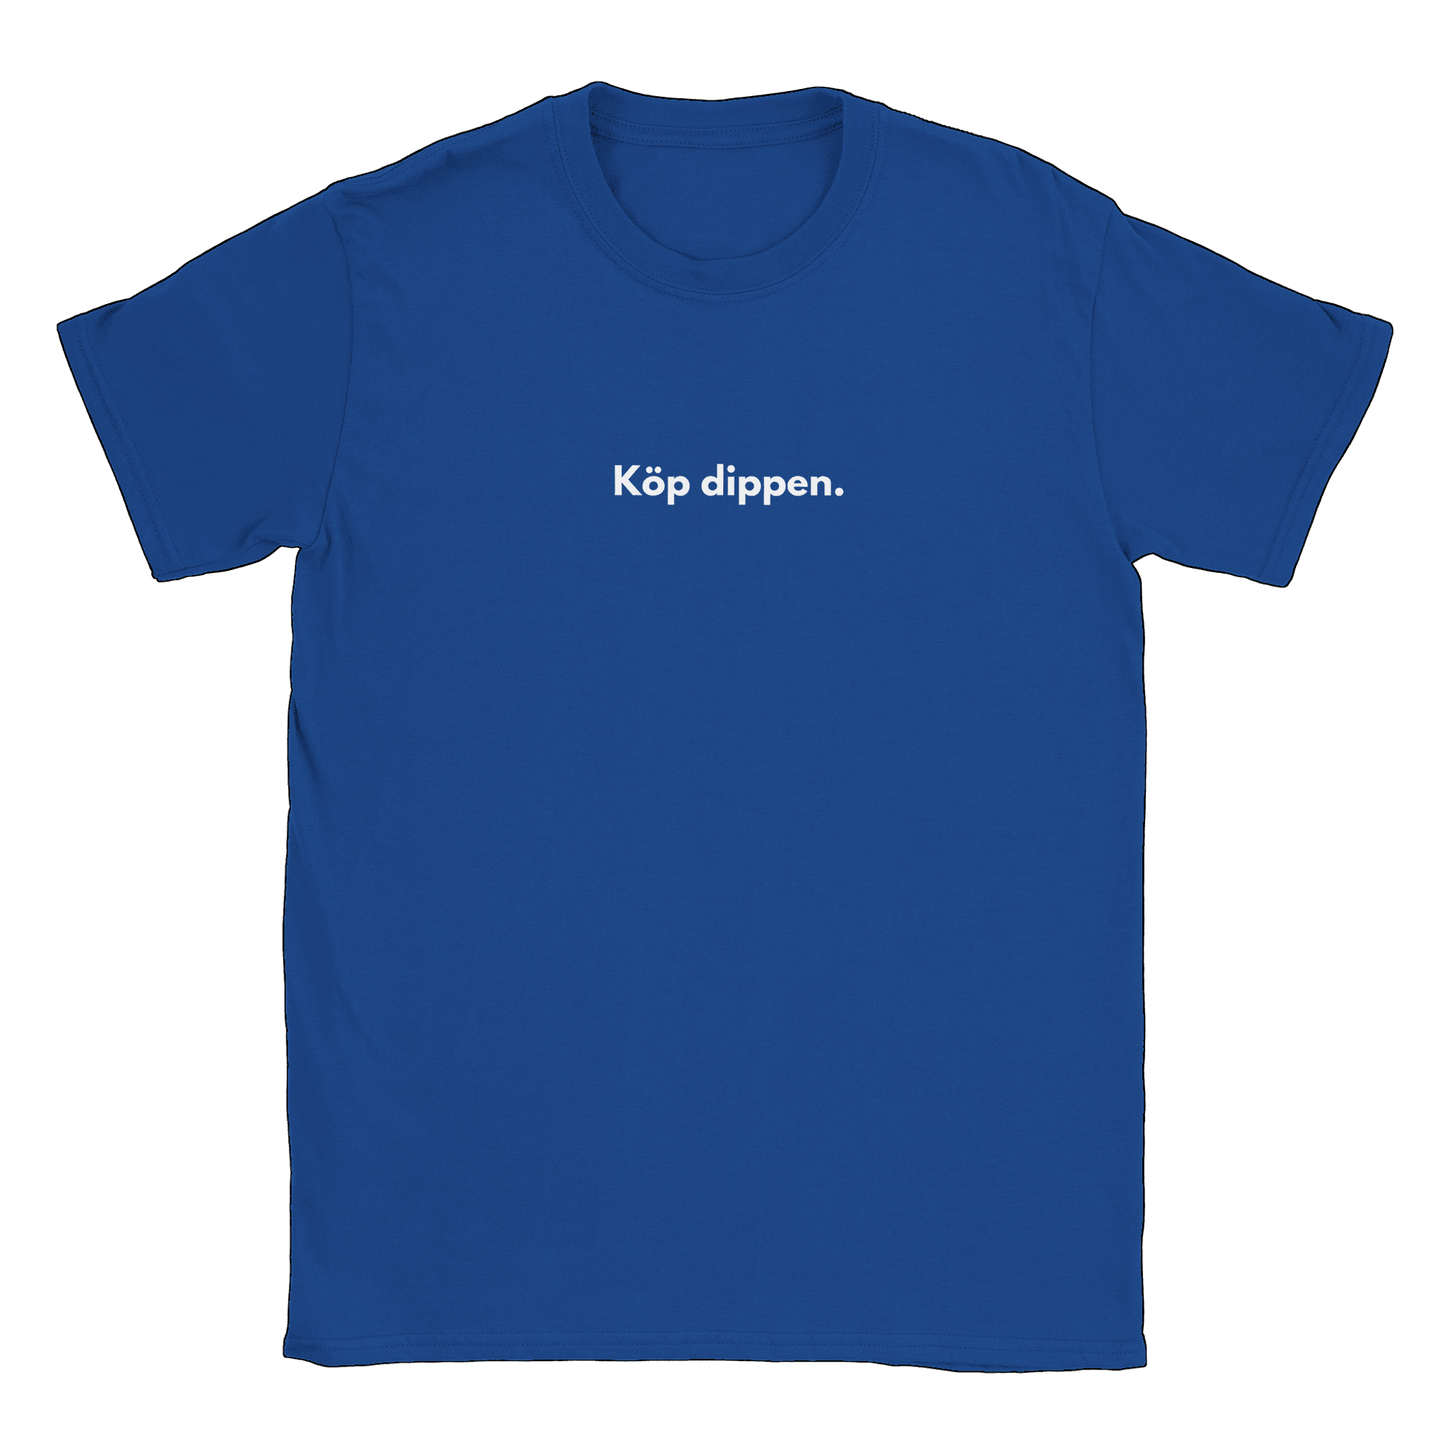 Köp dippen - T-shirt Blå